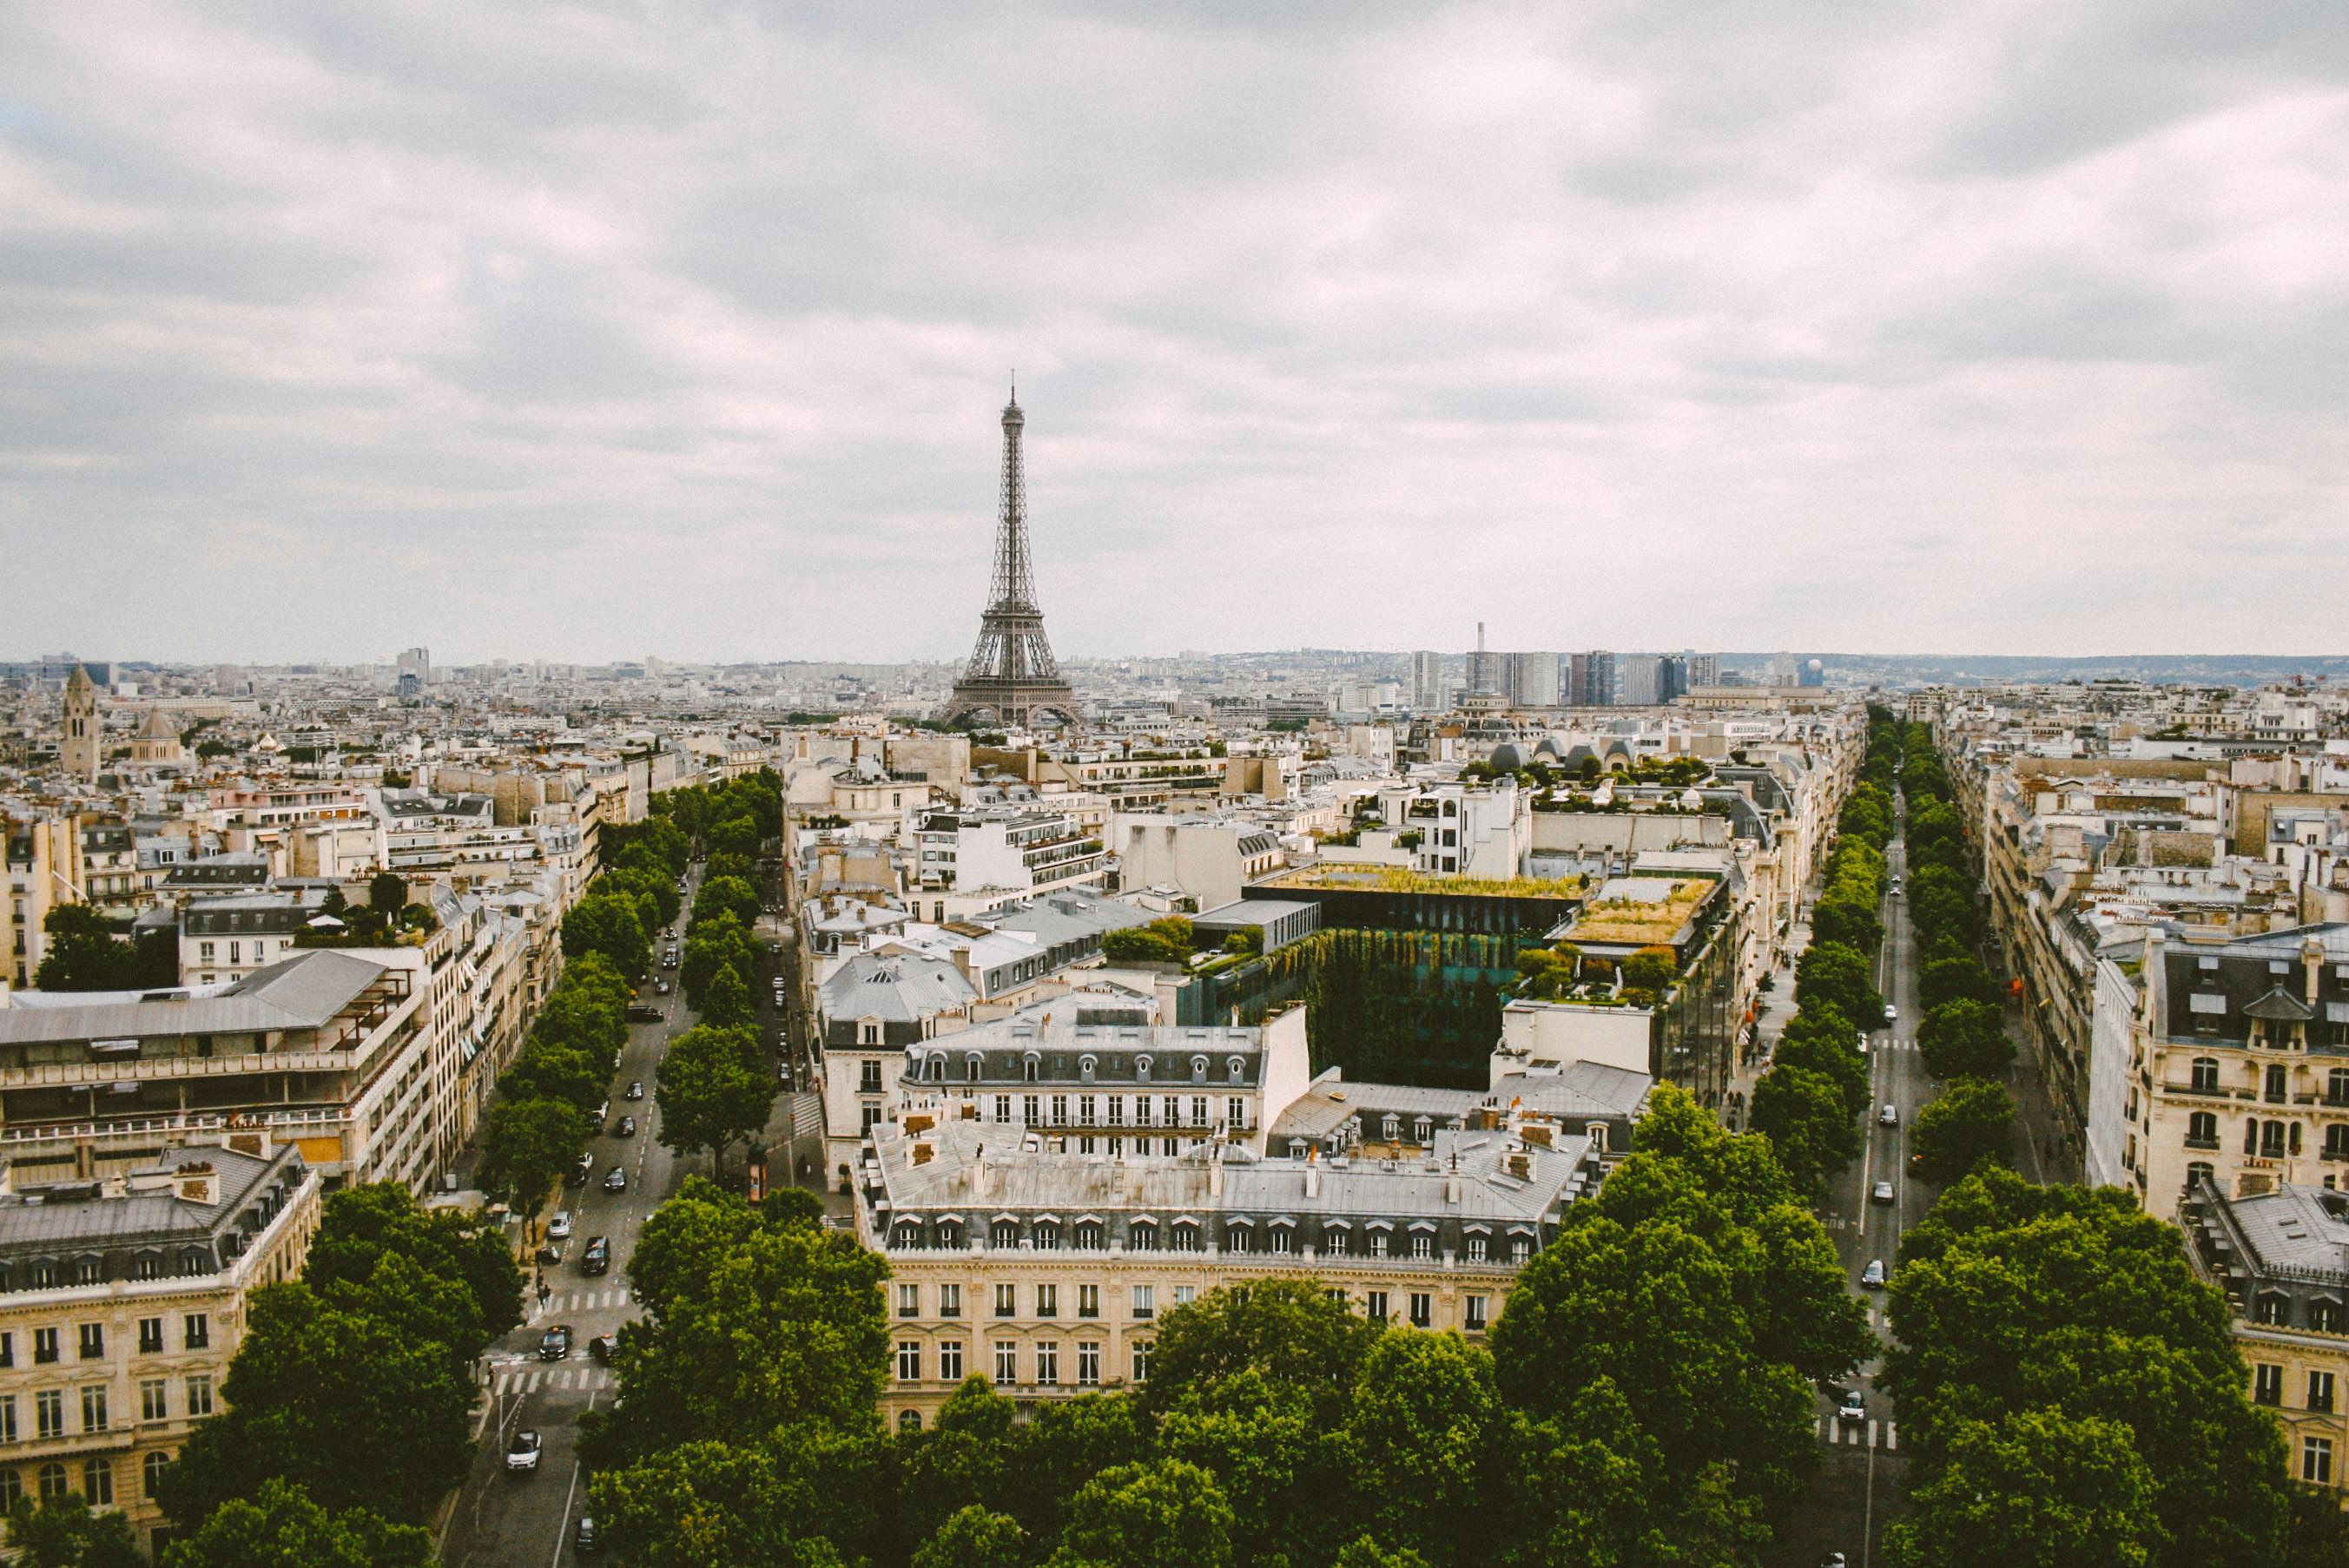 Jeux olympiques 2024, travaux... : Comment se porte le marché de l'immobilier à Paris ?